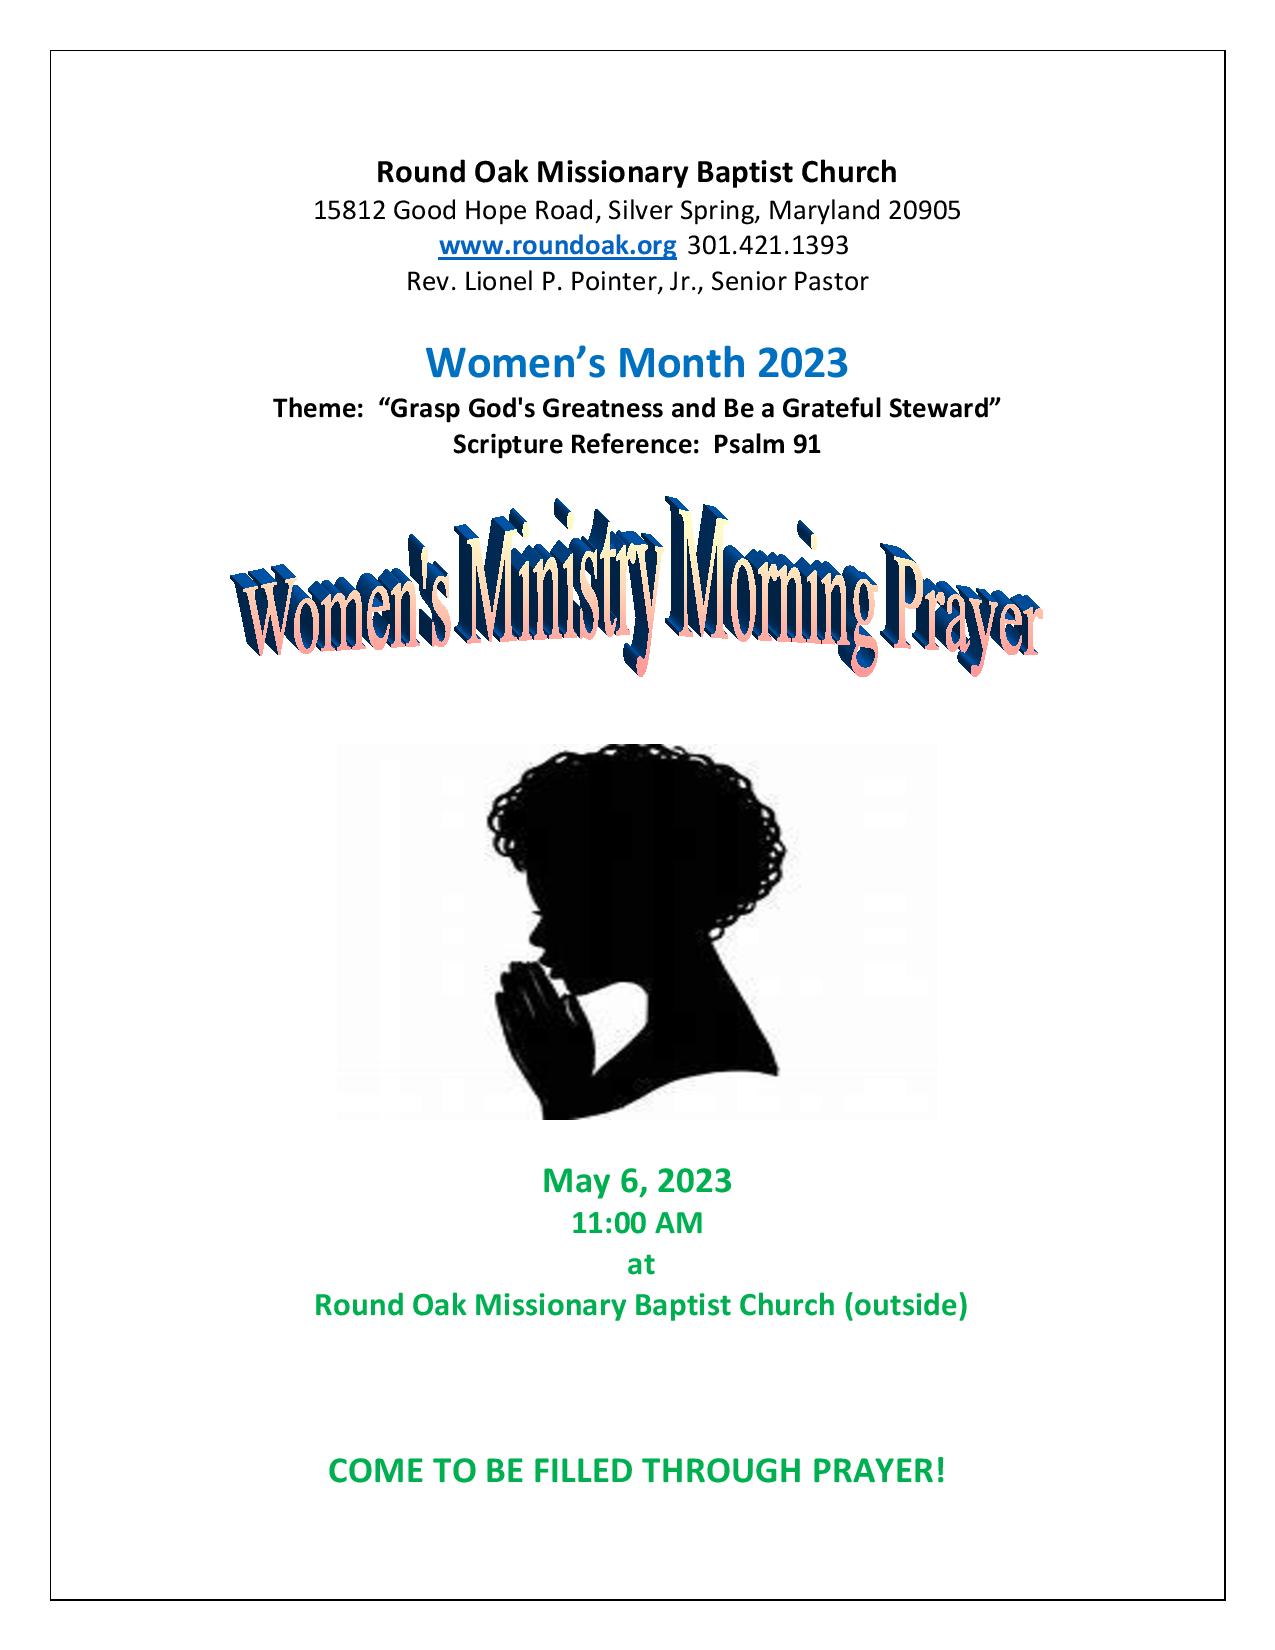 Women s Ministry Morning Prayer Flyer